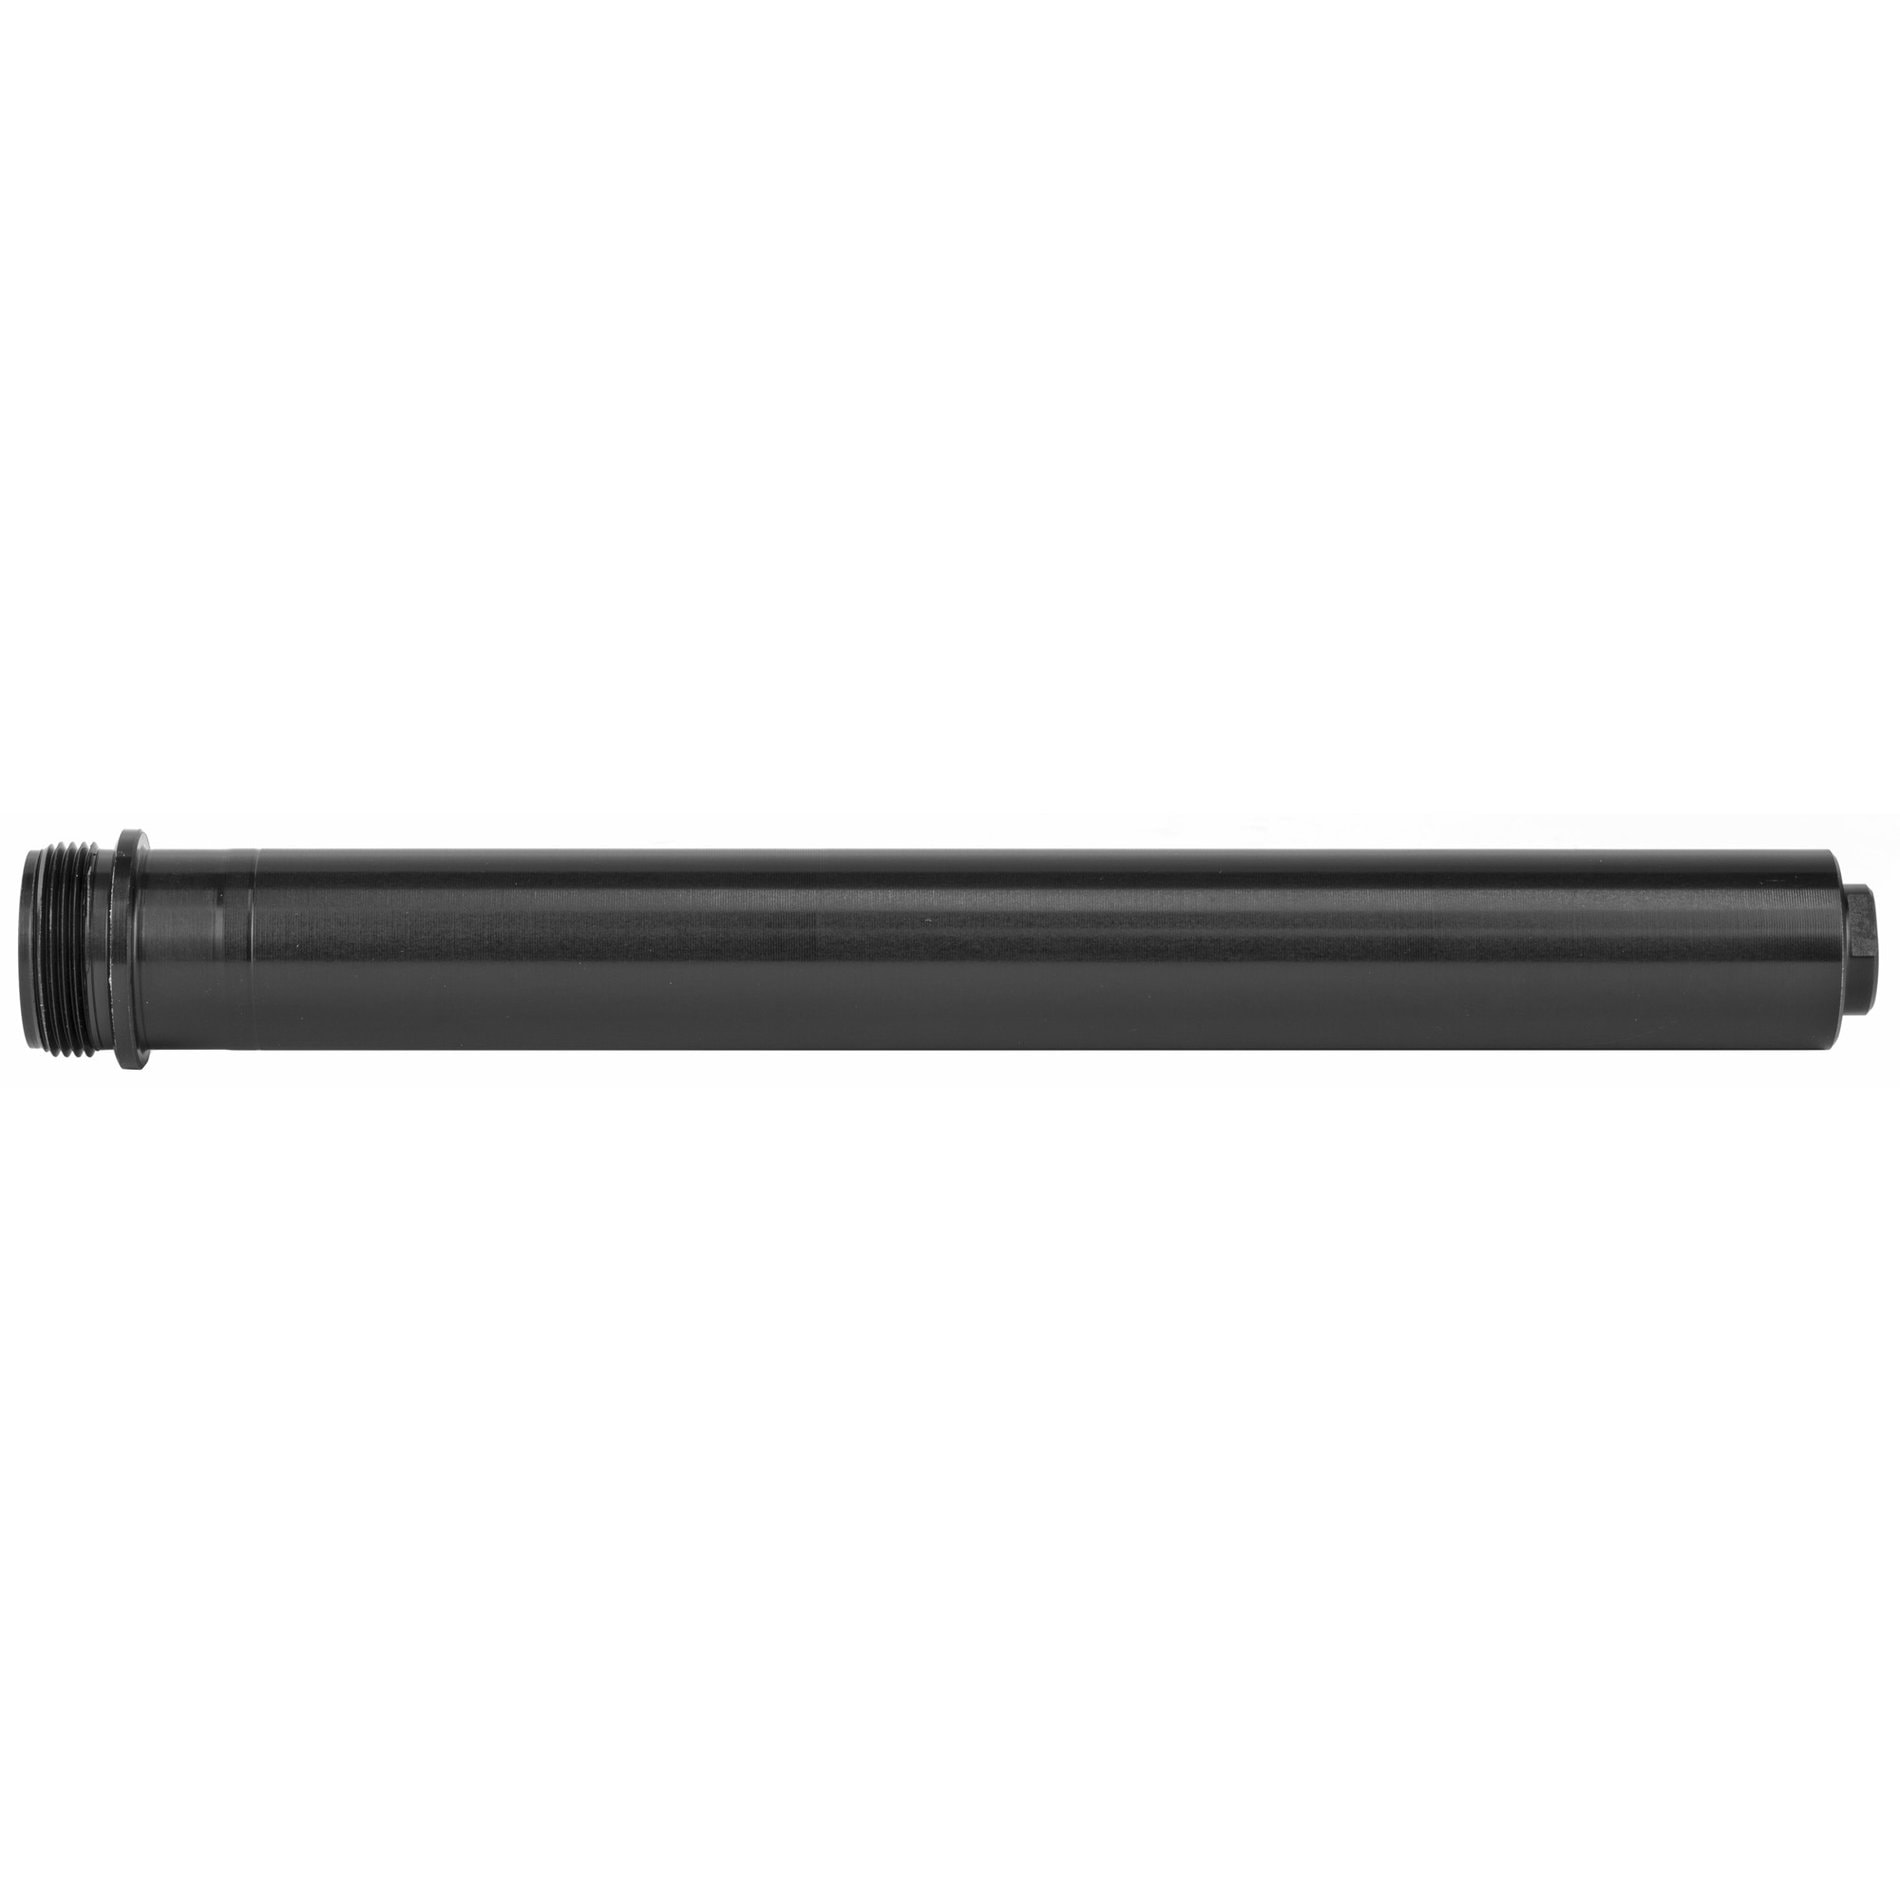 Luth-AR A2 Length AR-15 Rifle Buffer Tube for Fixed Stocks - AT3 Tactical